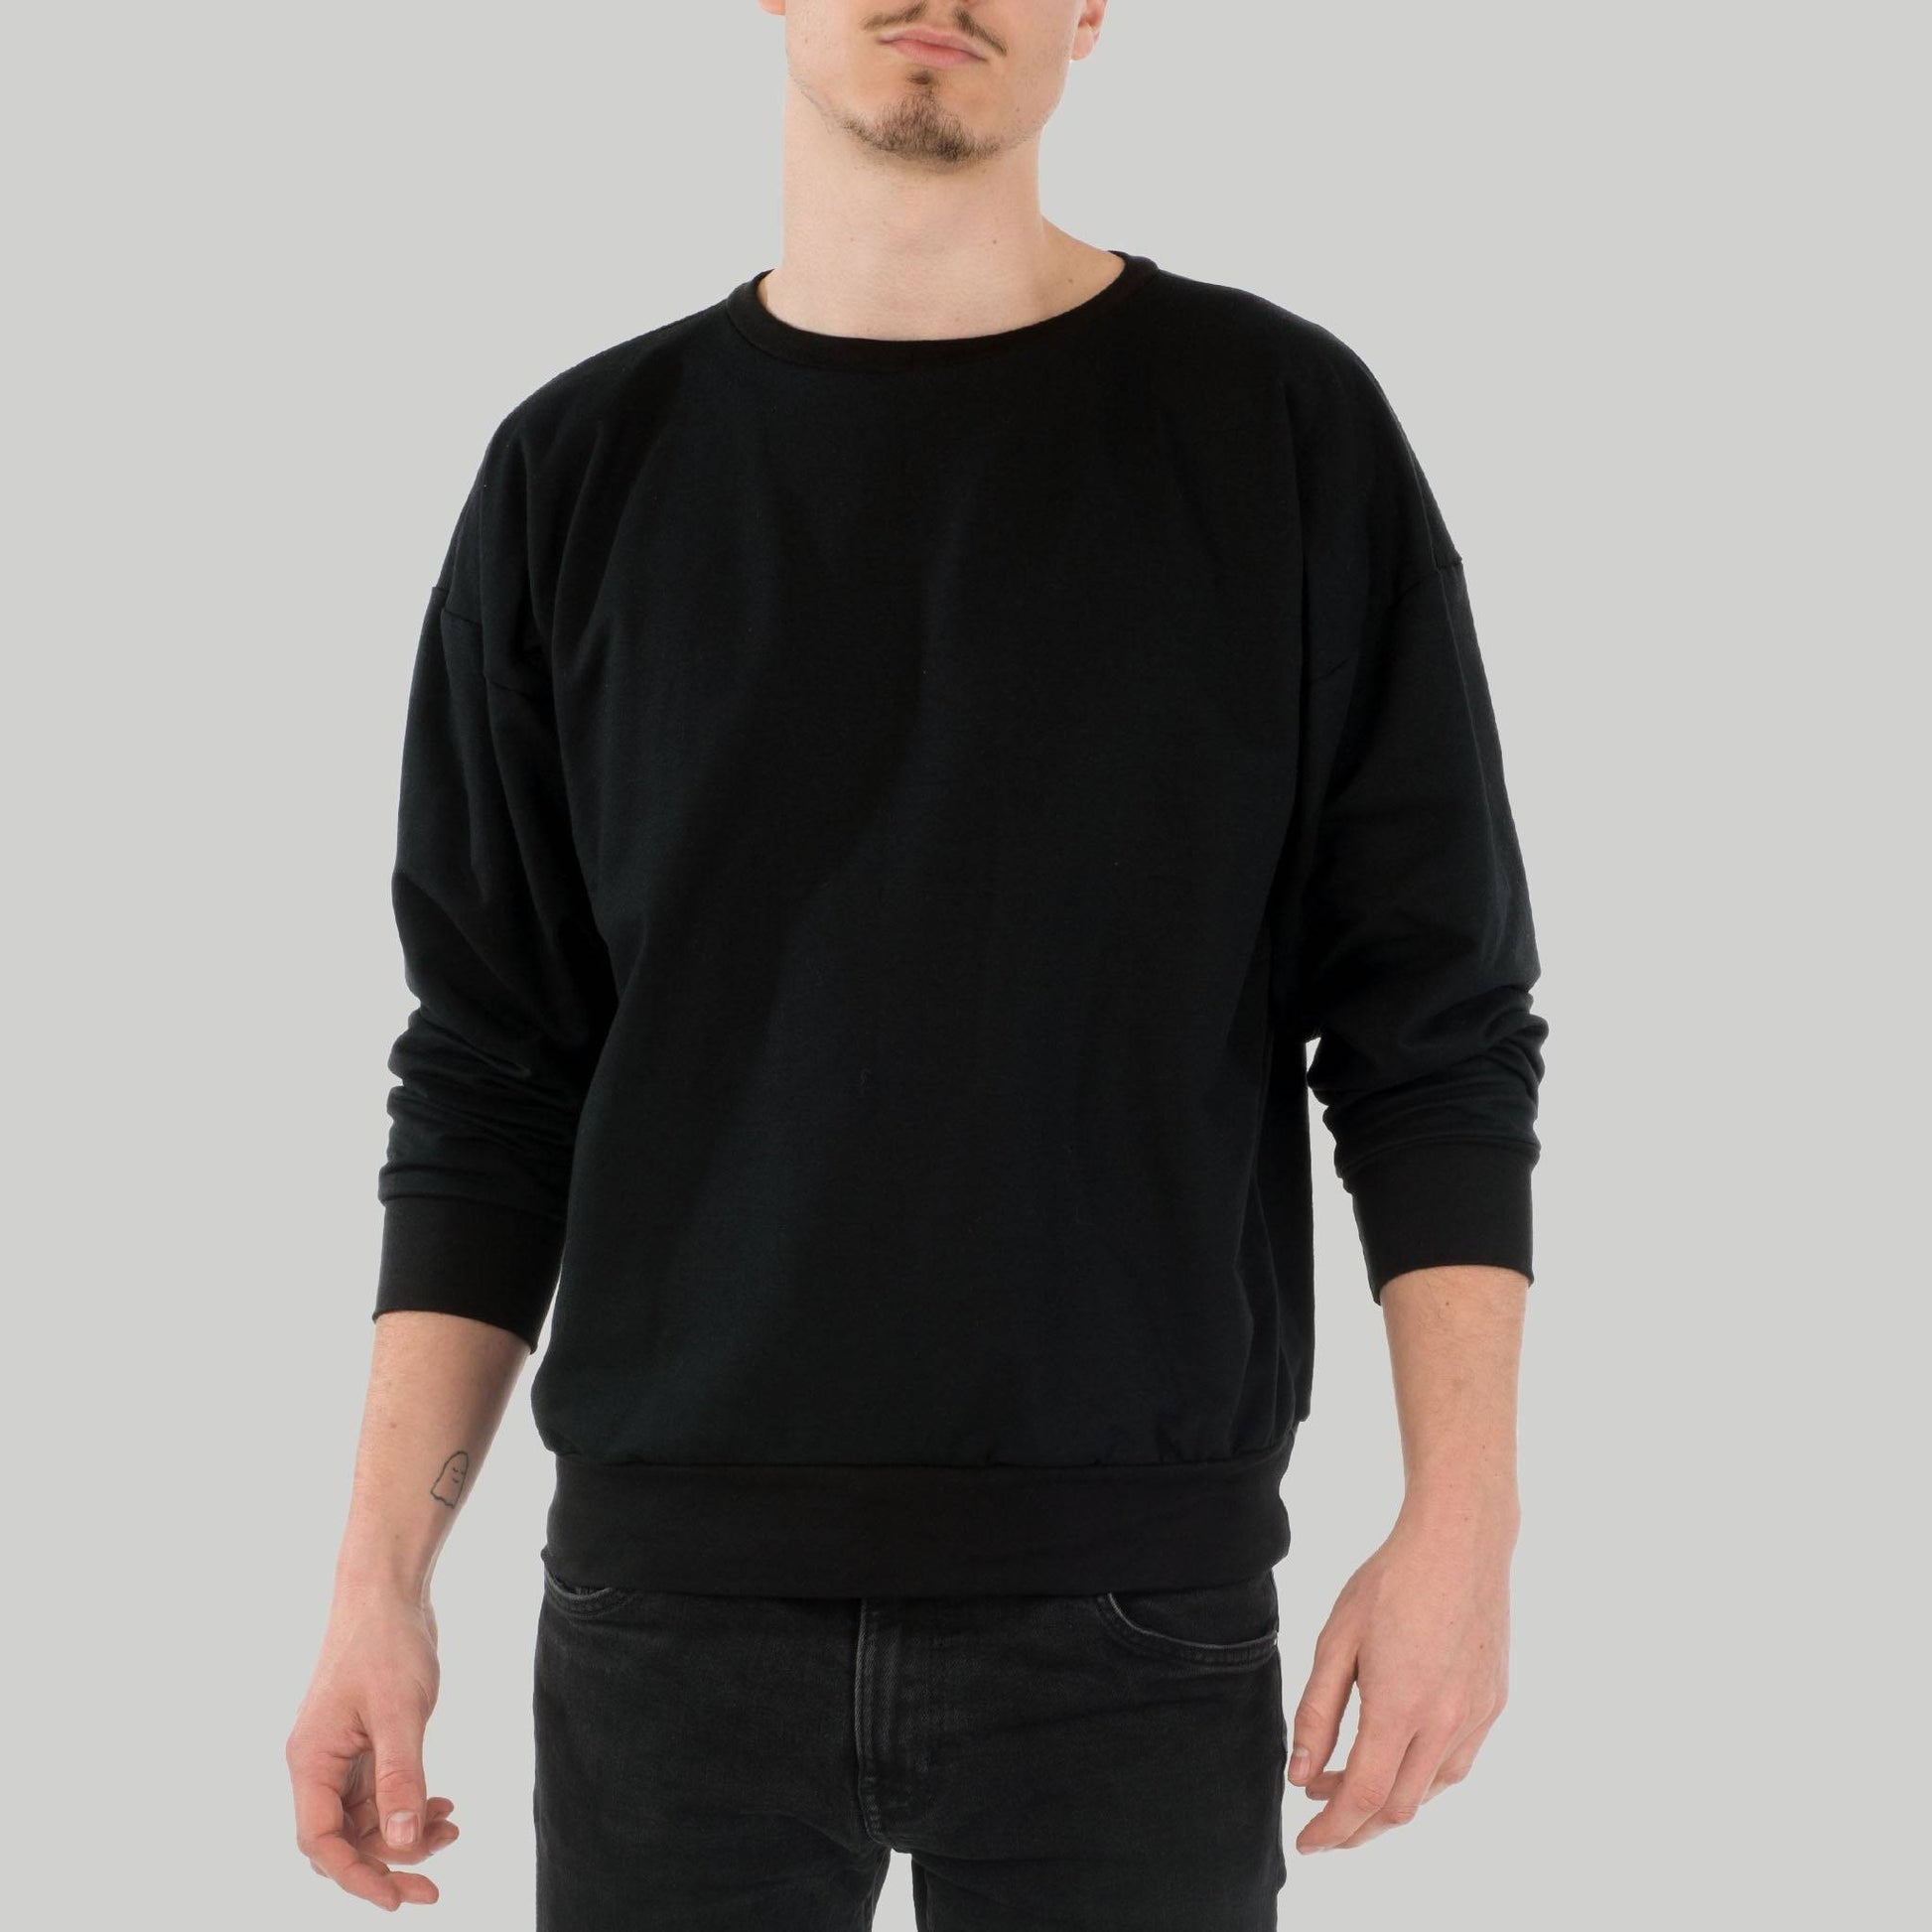 Sweater Lin aus Bio-Baumwolle - schwarz - KOLO Berlin